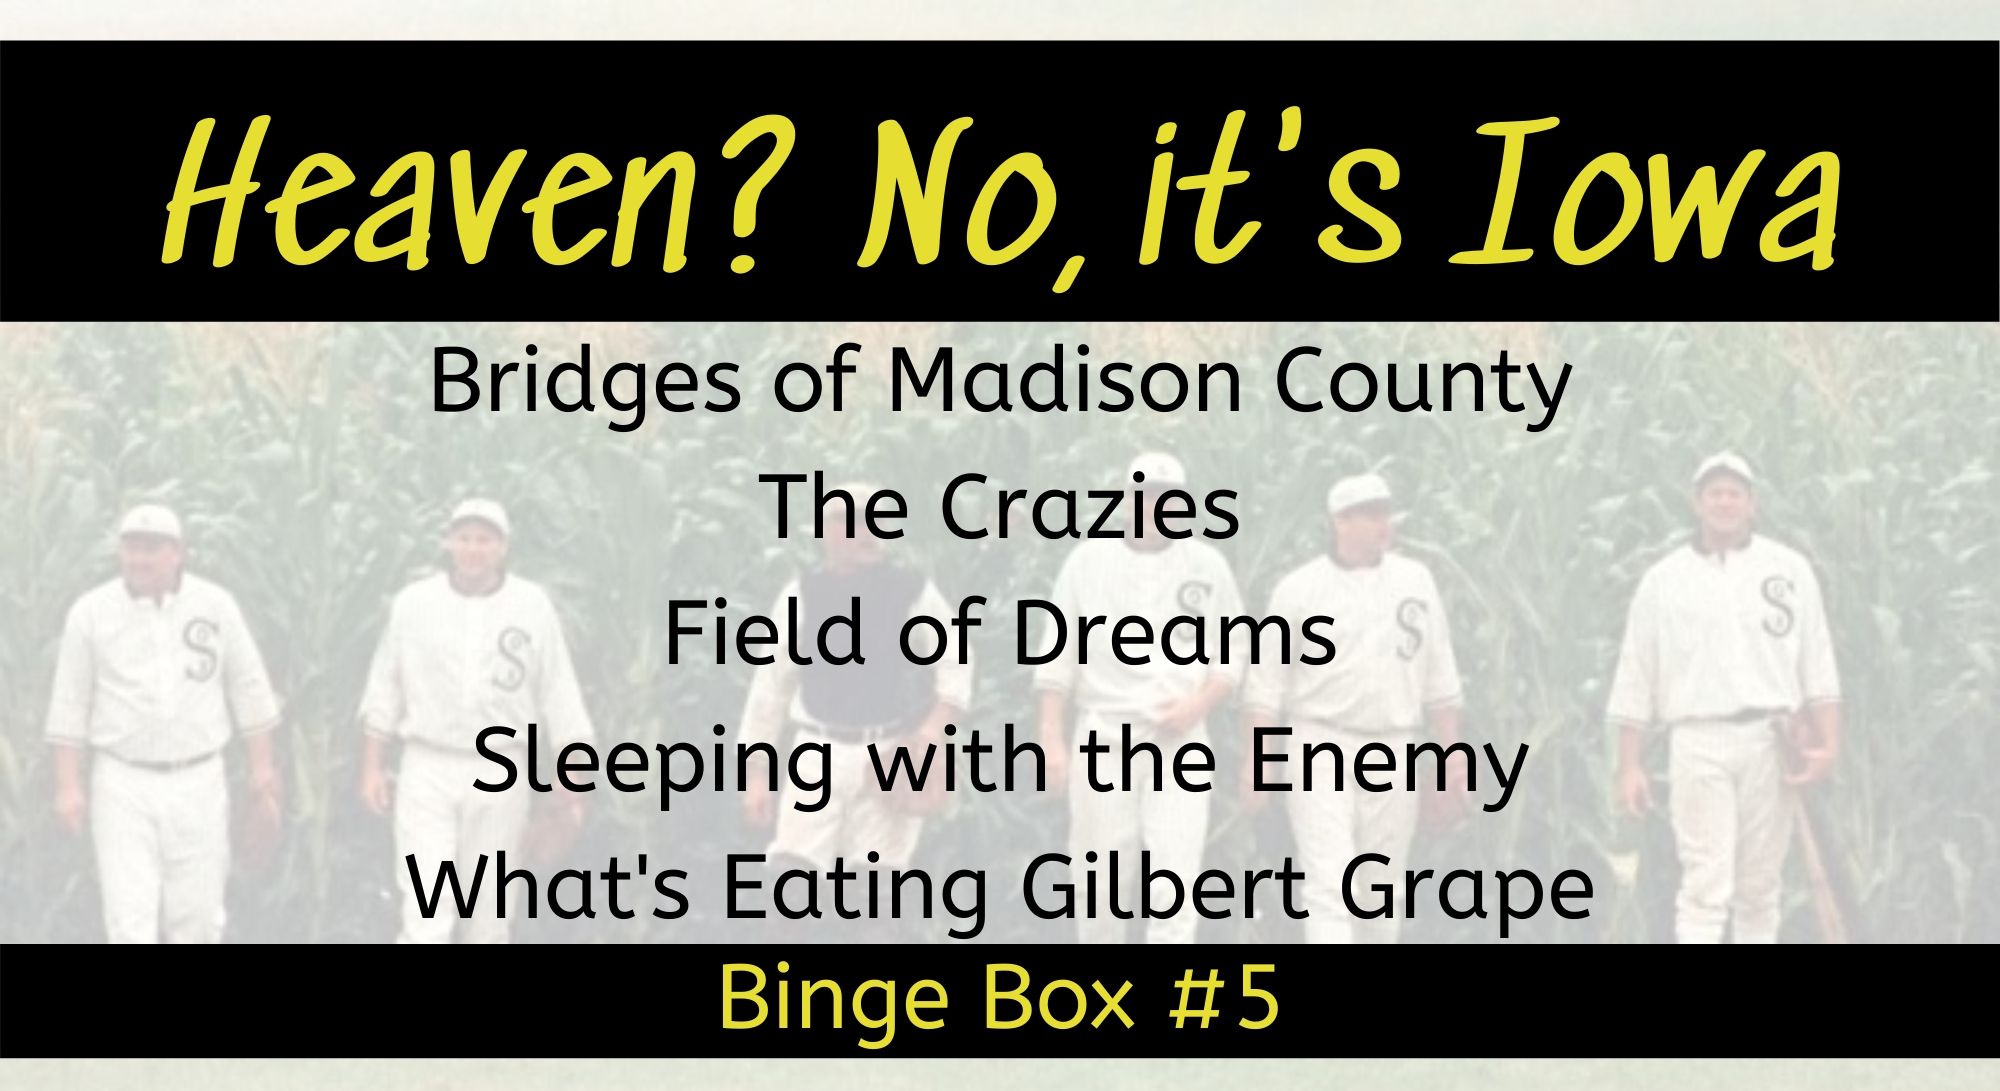 Heaven? No, it's Iowa Binge Box